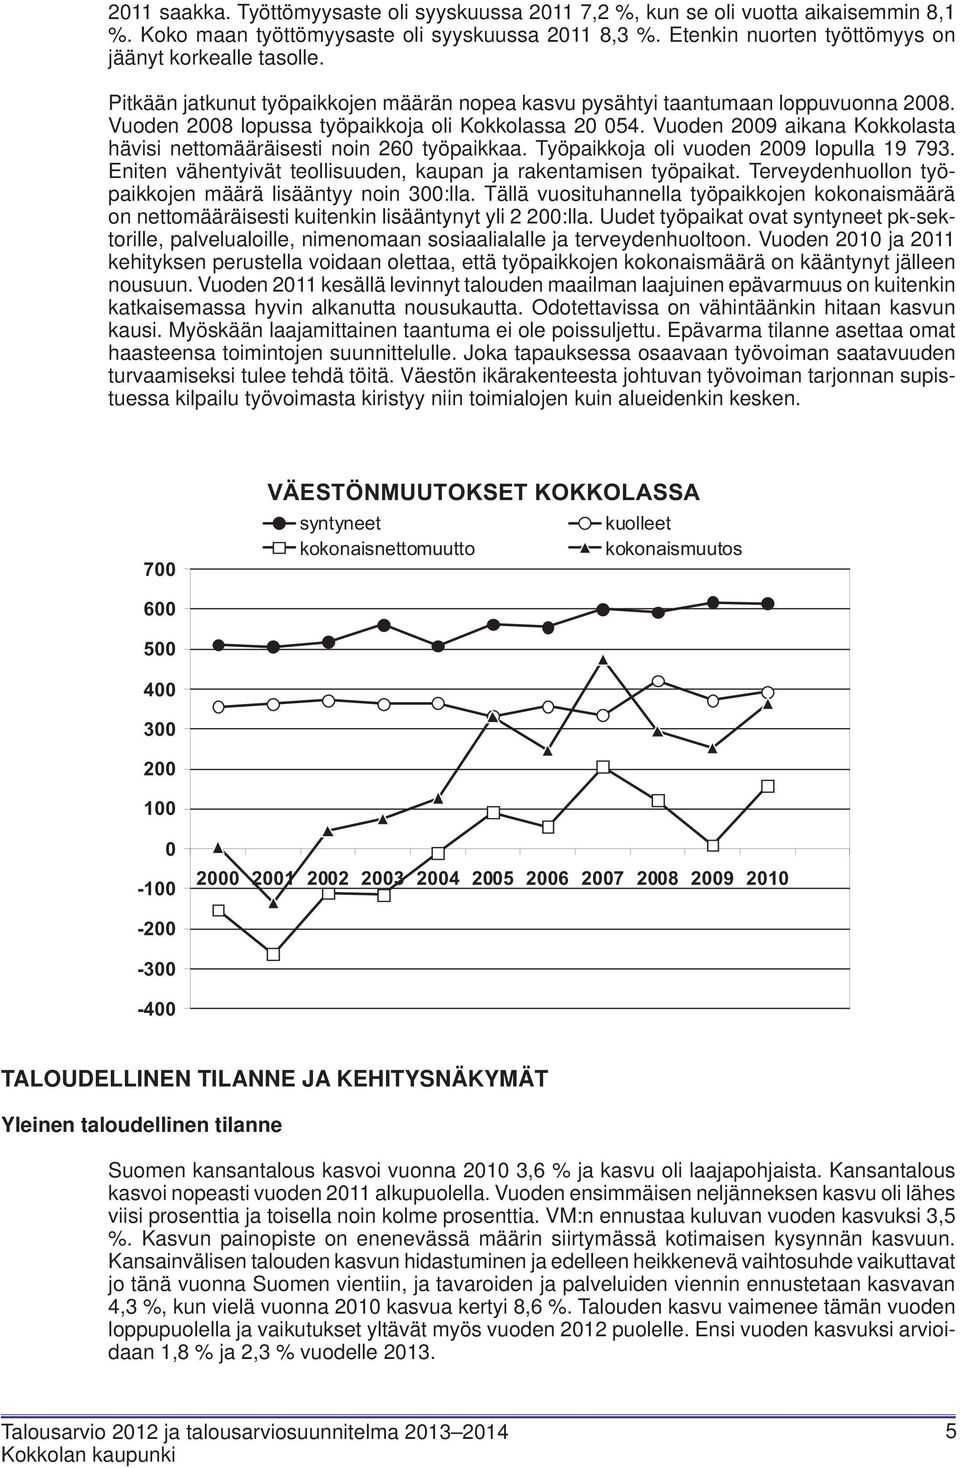 Vuoden 2009 aikana Kokkolasta hävisi nettomääräisesti noin 260 työpaikkaa. Työpaikkoja oli vuoden 2009 lopulla 19 793. Eniten vähentyivät teollisuuden, kaupan ja rakentamisen työpaikat.